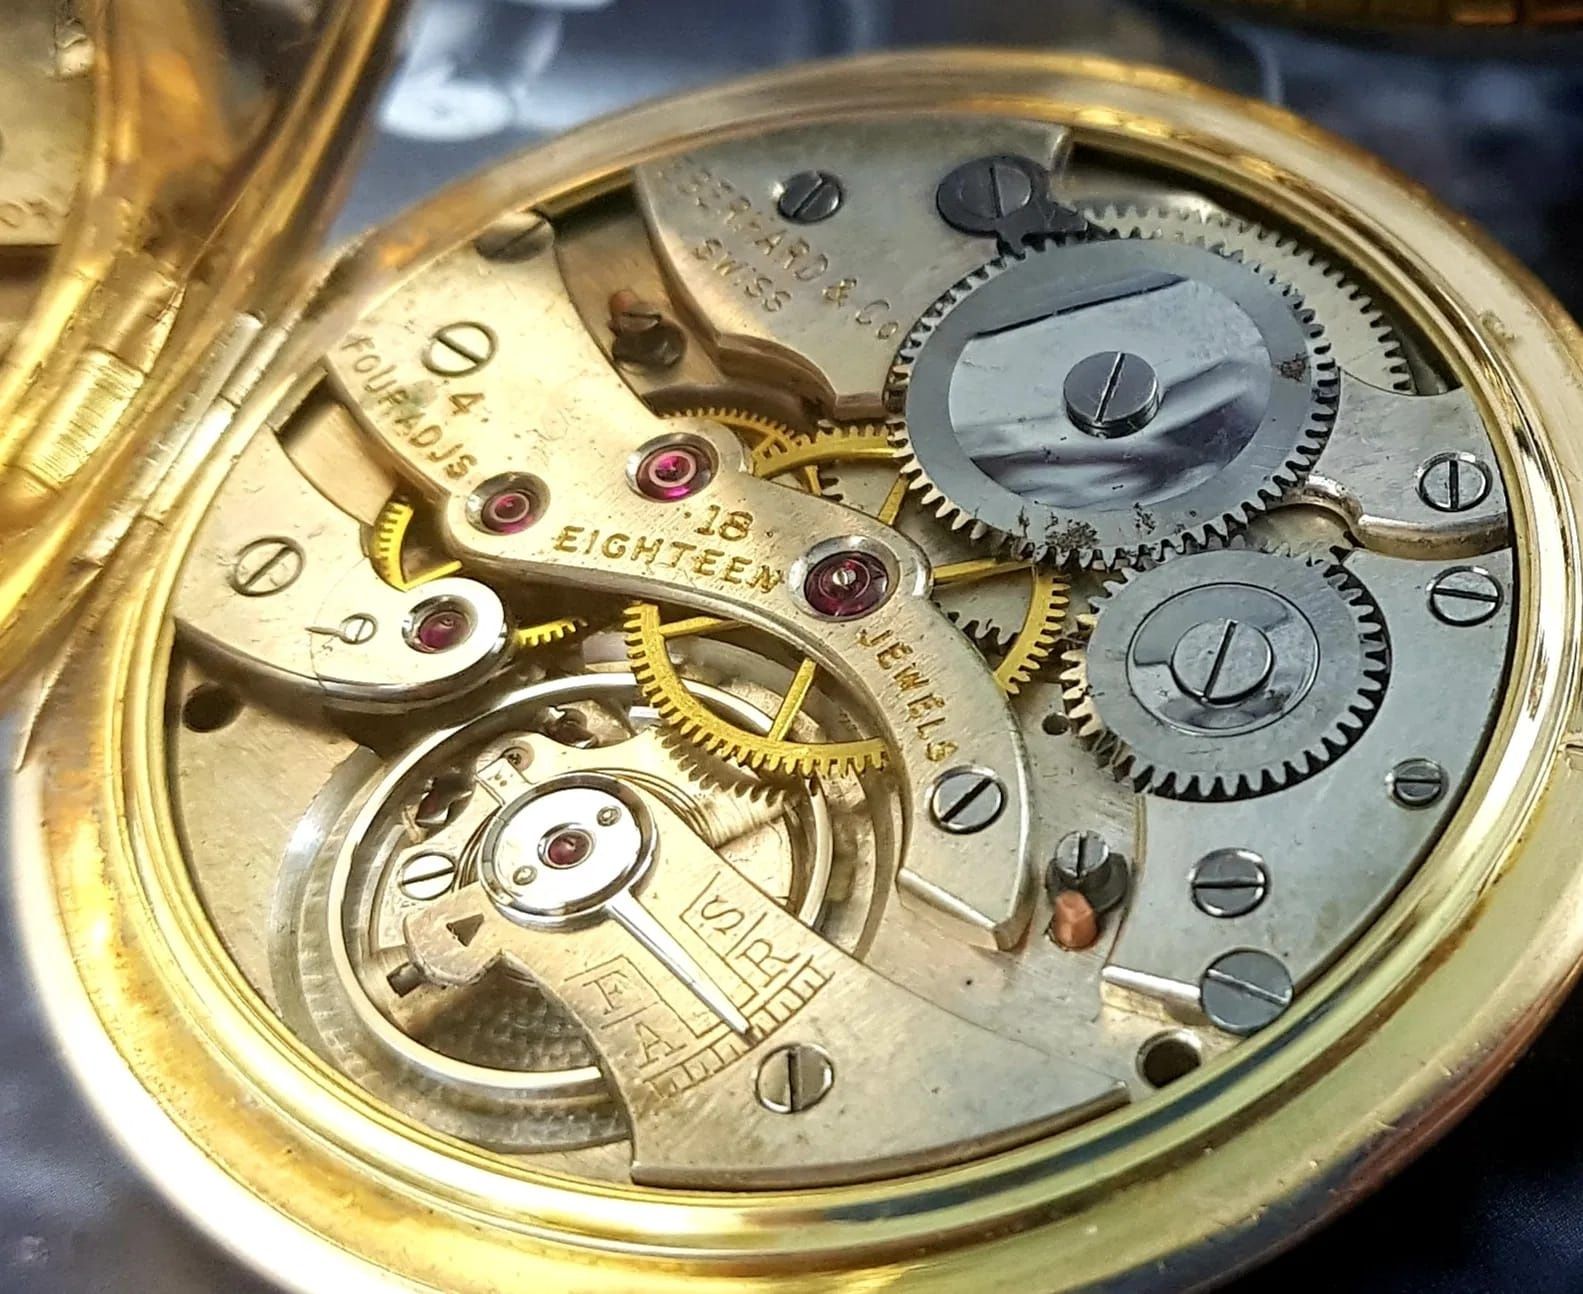 Zegarek kieszonkowy Eberhard złoto 14k , unikat  ultra slim Chronometr